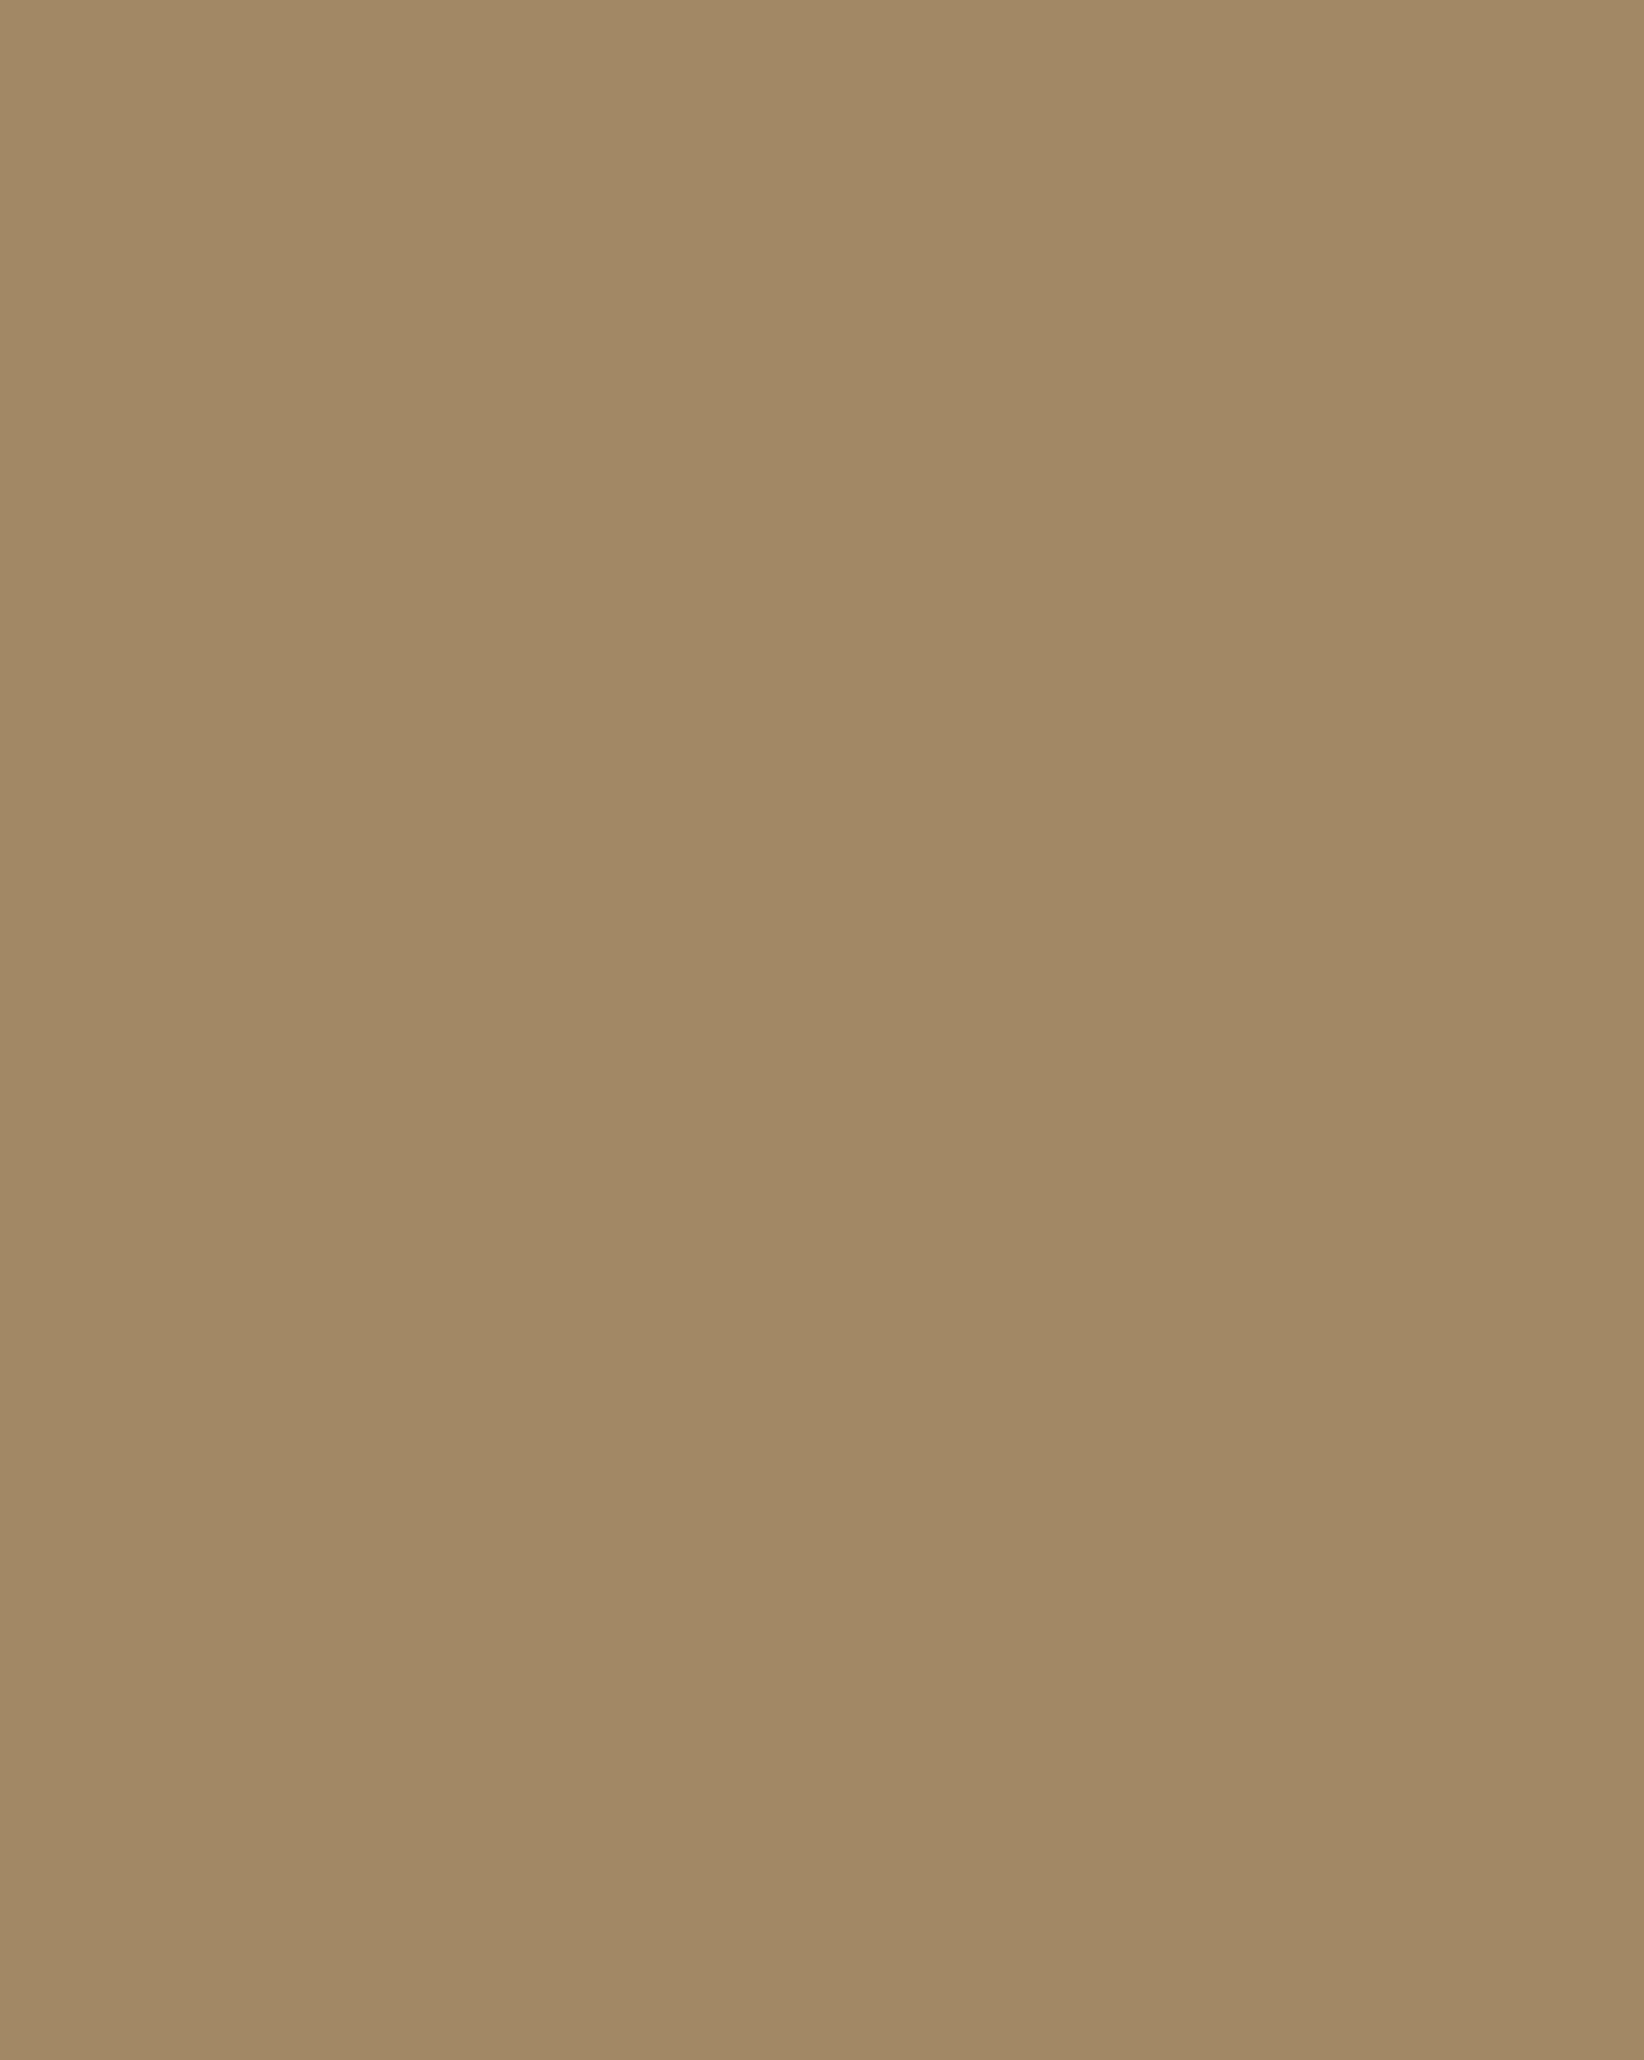 Казимир Малевич. Солдат первой дивизии (фрагмент). 1914. Нью-Йоркский музей современного искусства (МоМА), Нью-Йорк, США